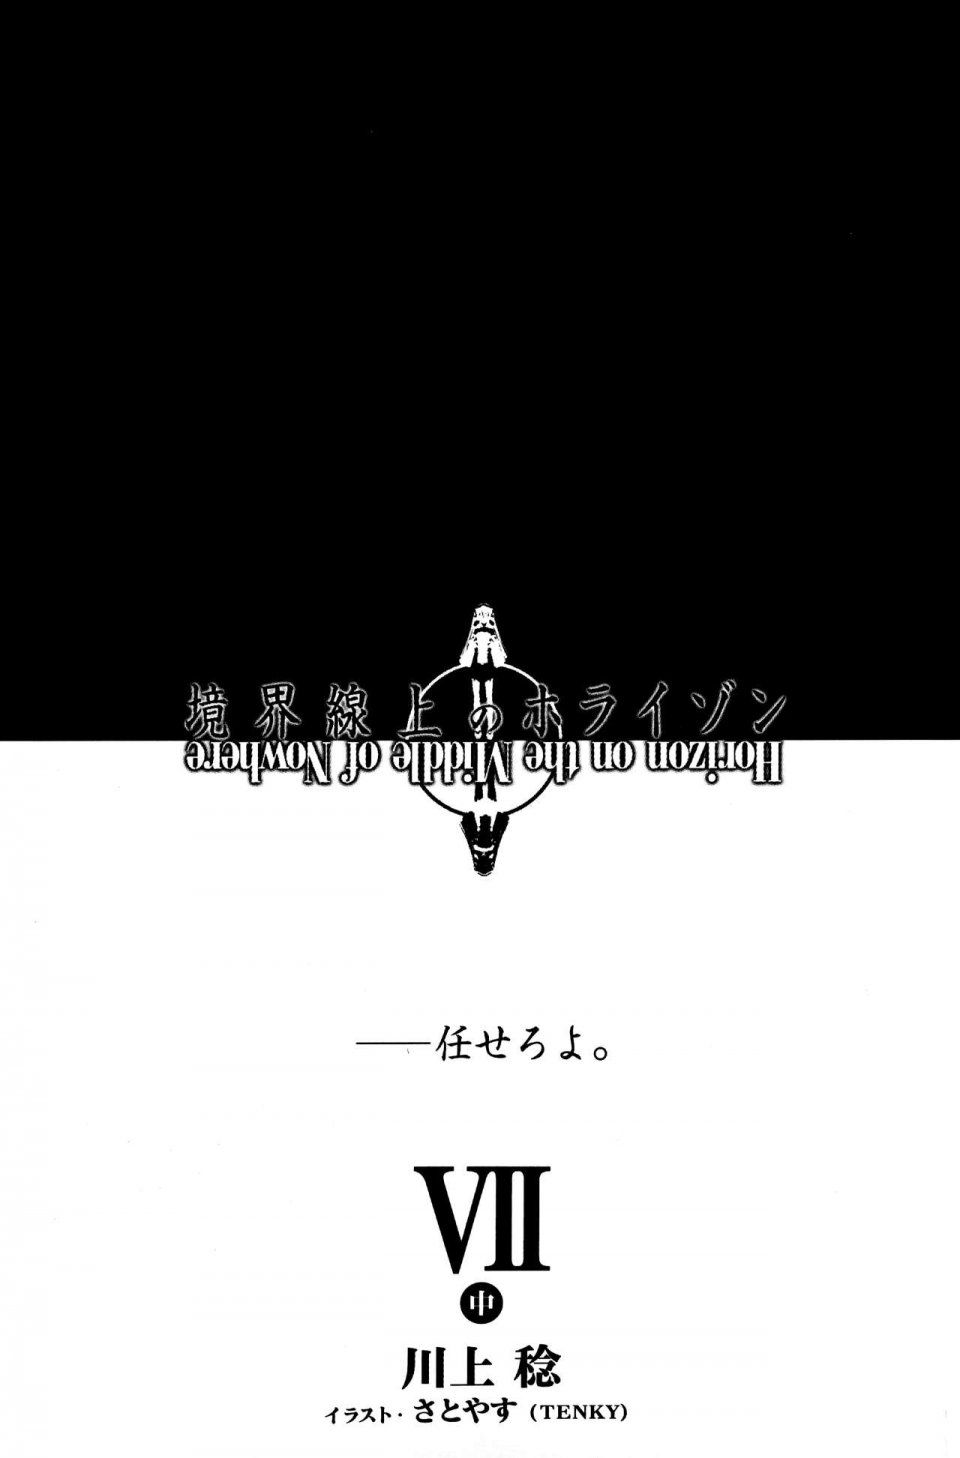 Kyoukai Senjou no Horizon LN Vol 17(7B) - Photo #5